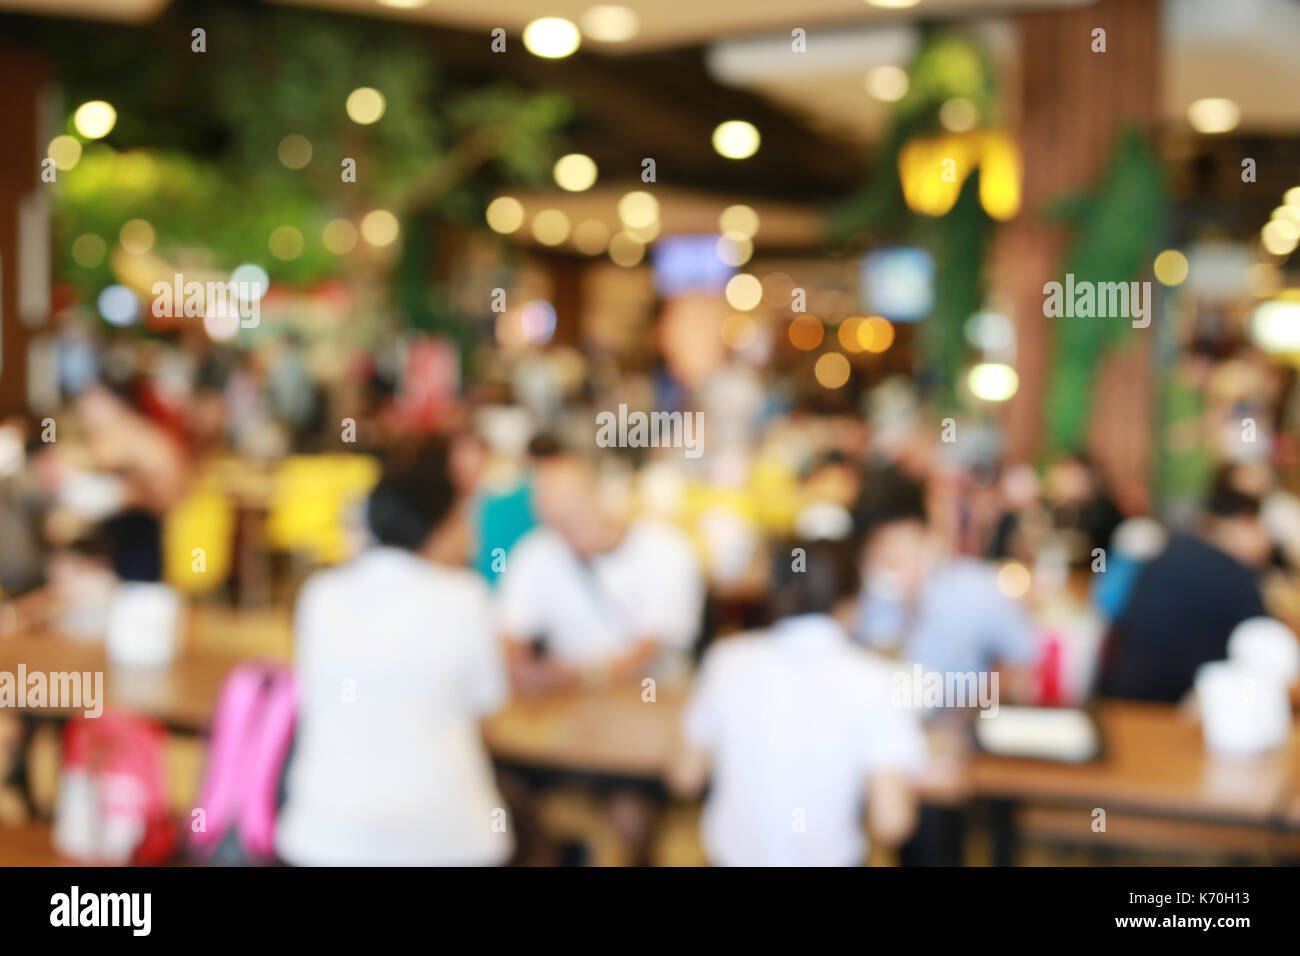 Abstract blur sullo sfondo di ristoranti cafe per la progettazione di sfondo per la presentazione o la promozione delle imprese. Foto Stock